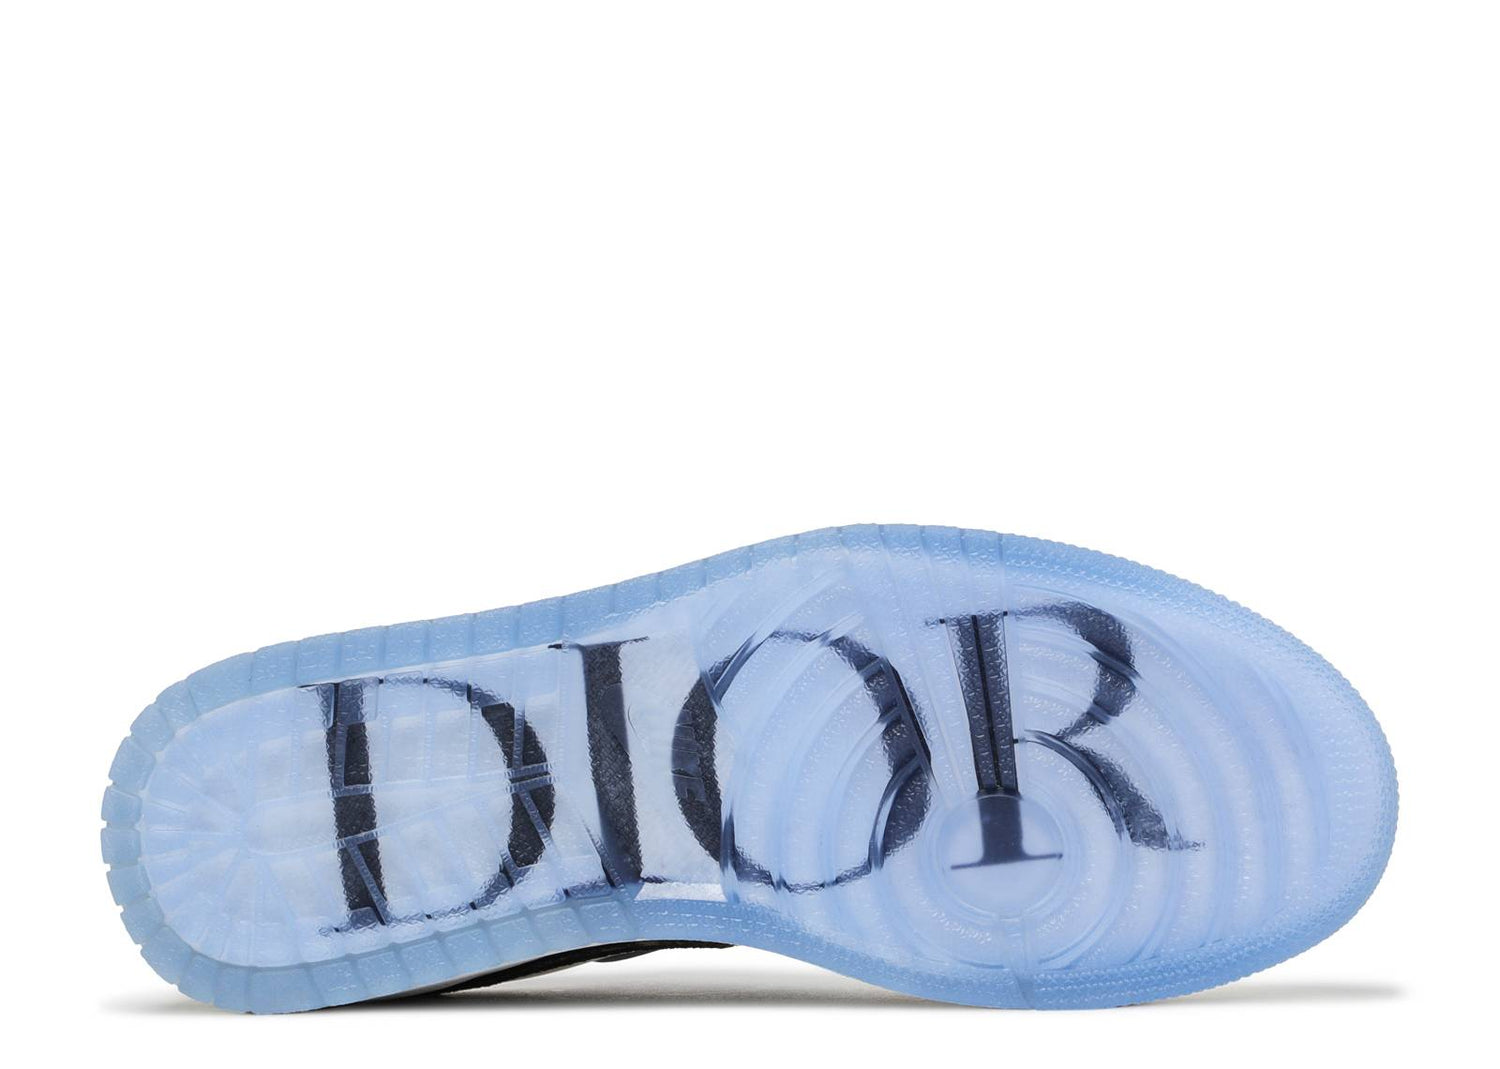 Air Jordan 1 low x Dior